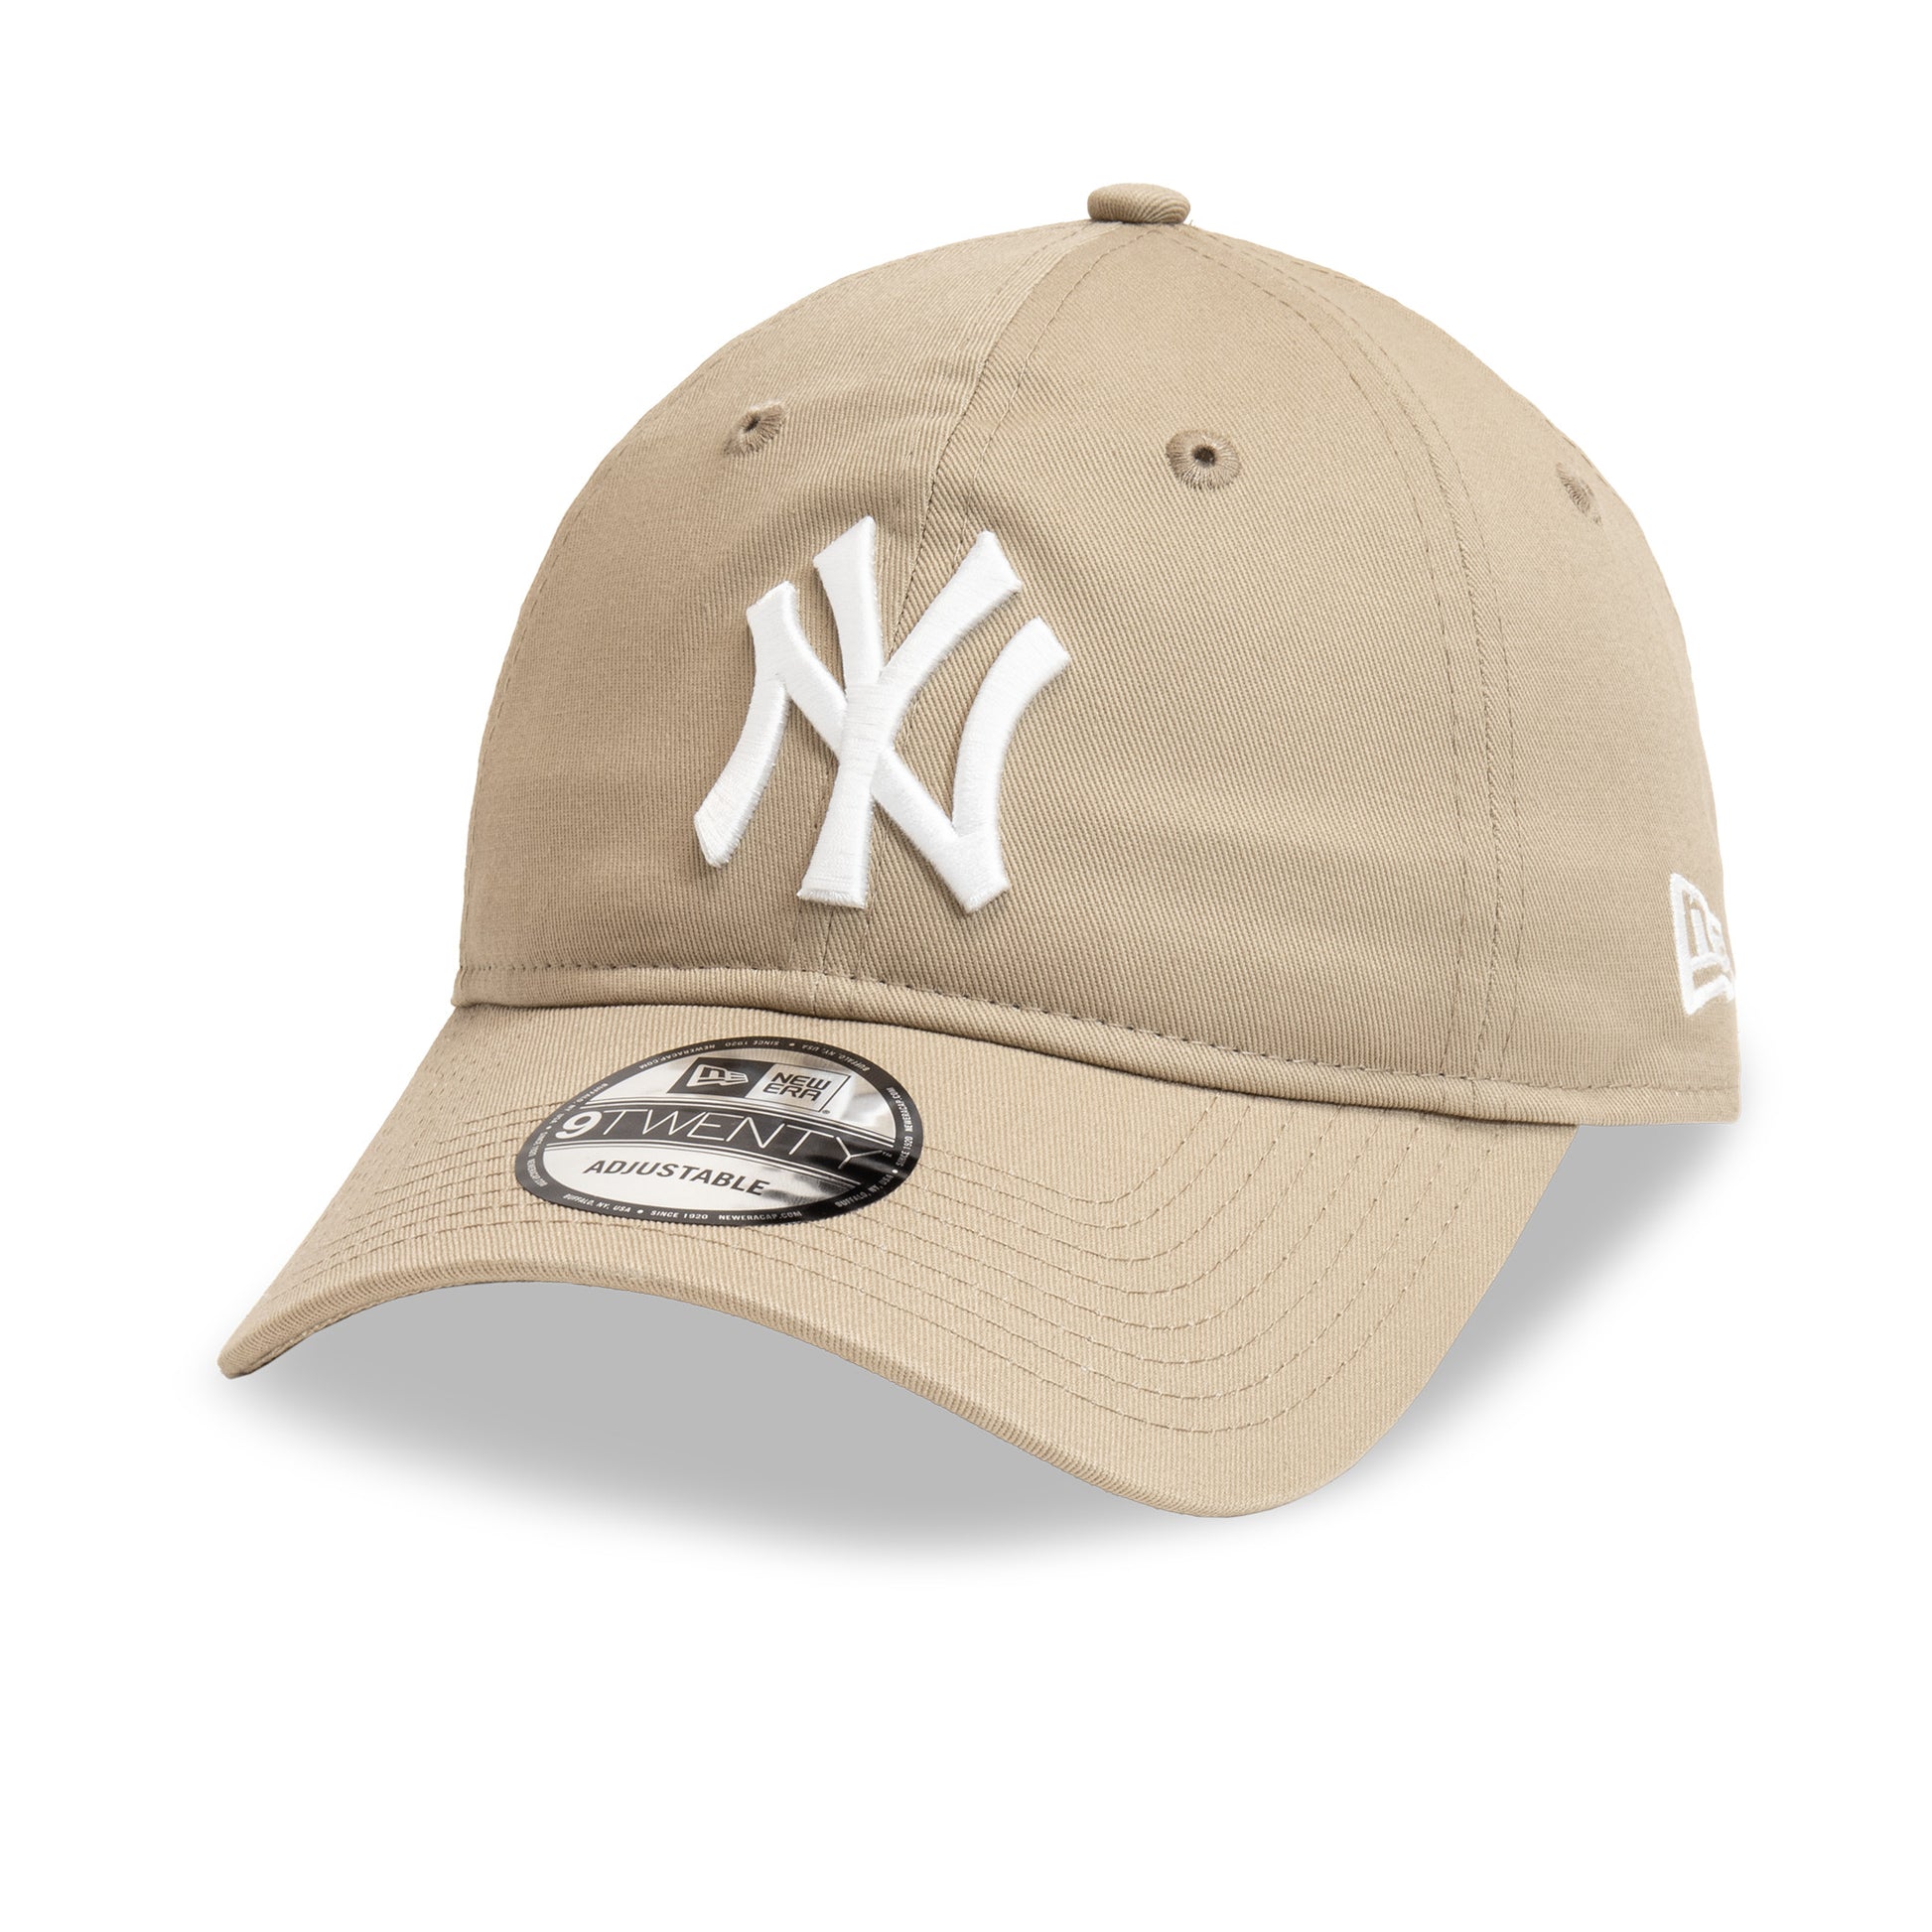 New Era - New York Yankees League Essentials 9Twenty - Khaki - Headz Up 